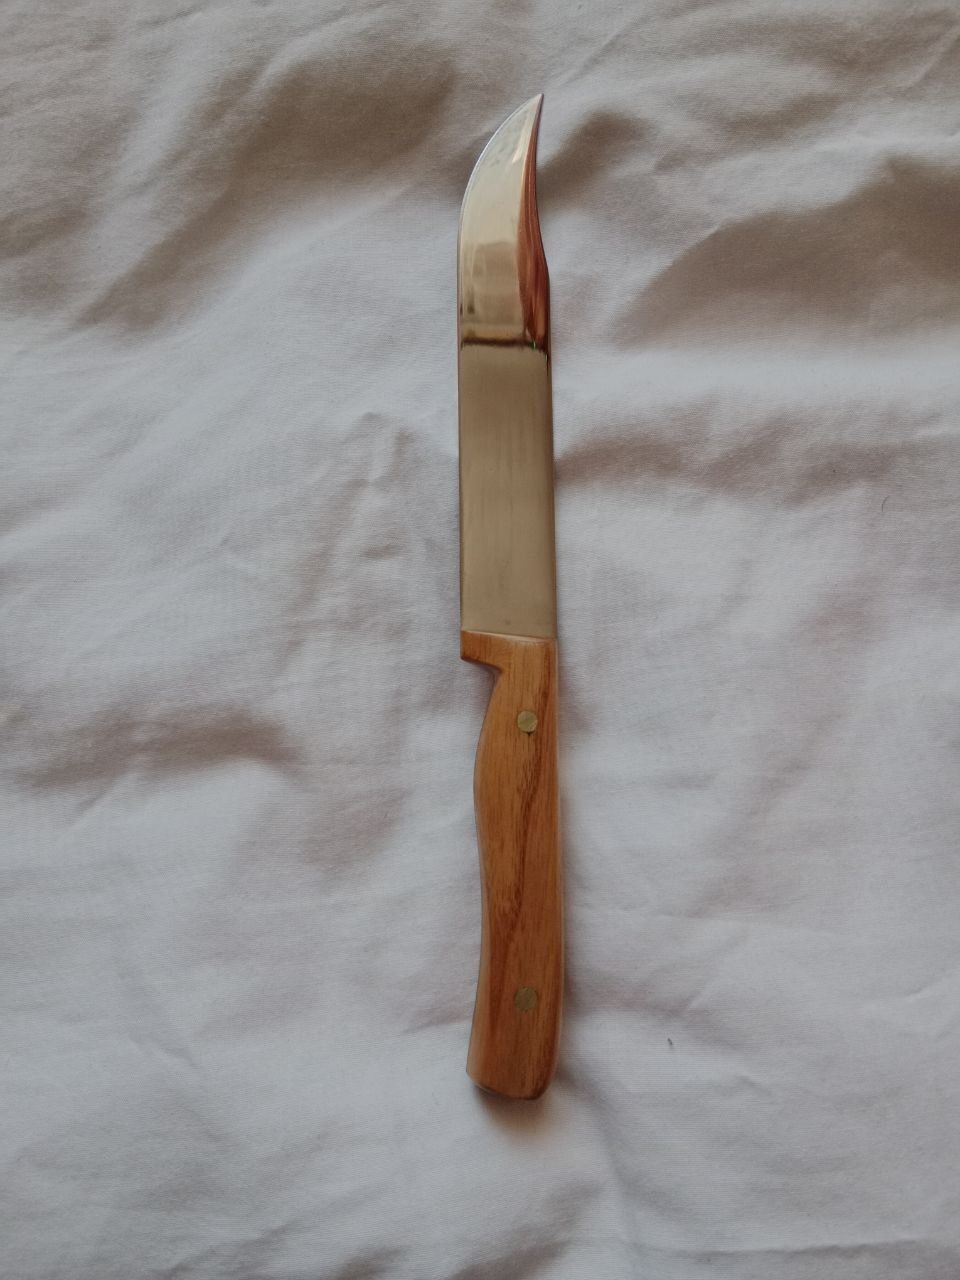 Кухонный Топорик, и нож в Подарок.